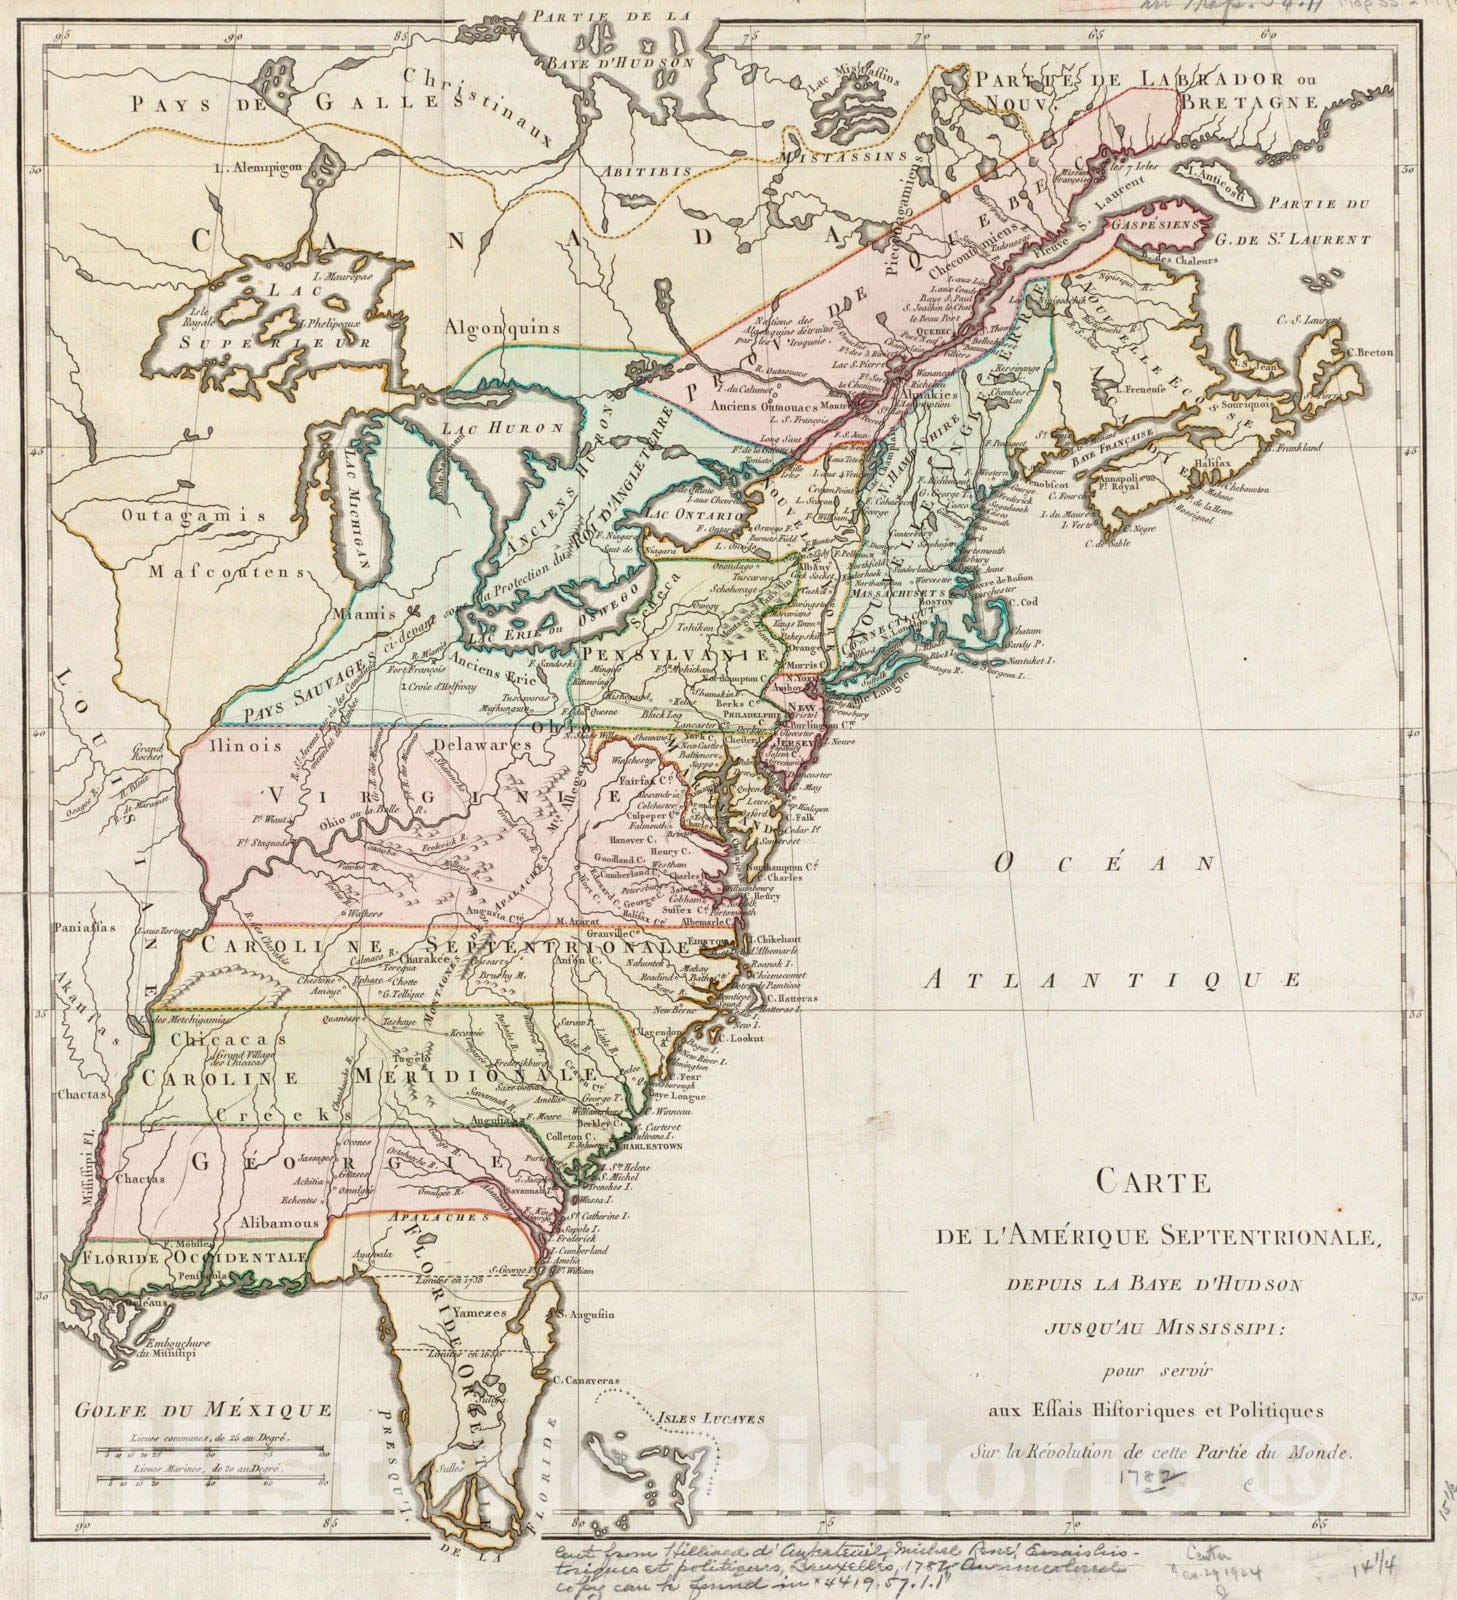 Historical Map, 1782 Carte de l'Amerique septentrionale, Depuis la baye d'Hudson jusqu'au Mississipi : Pour servir aux essais historiques et politiques, Vintage Wall Art